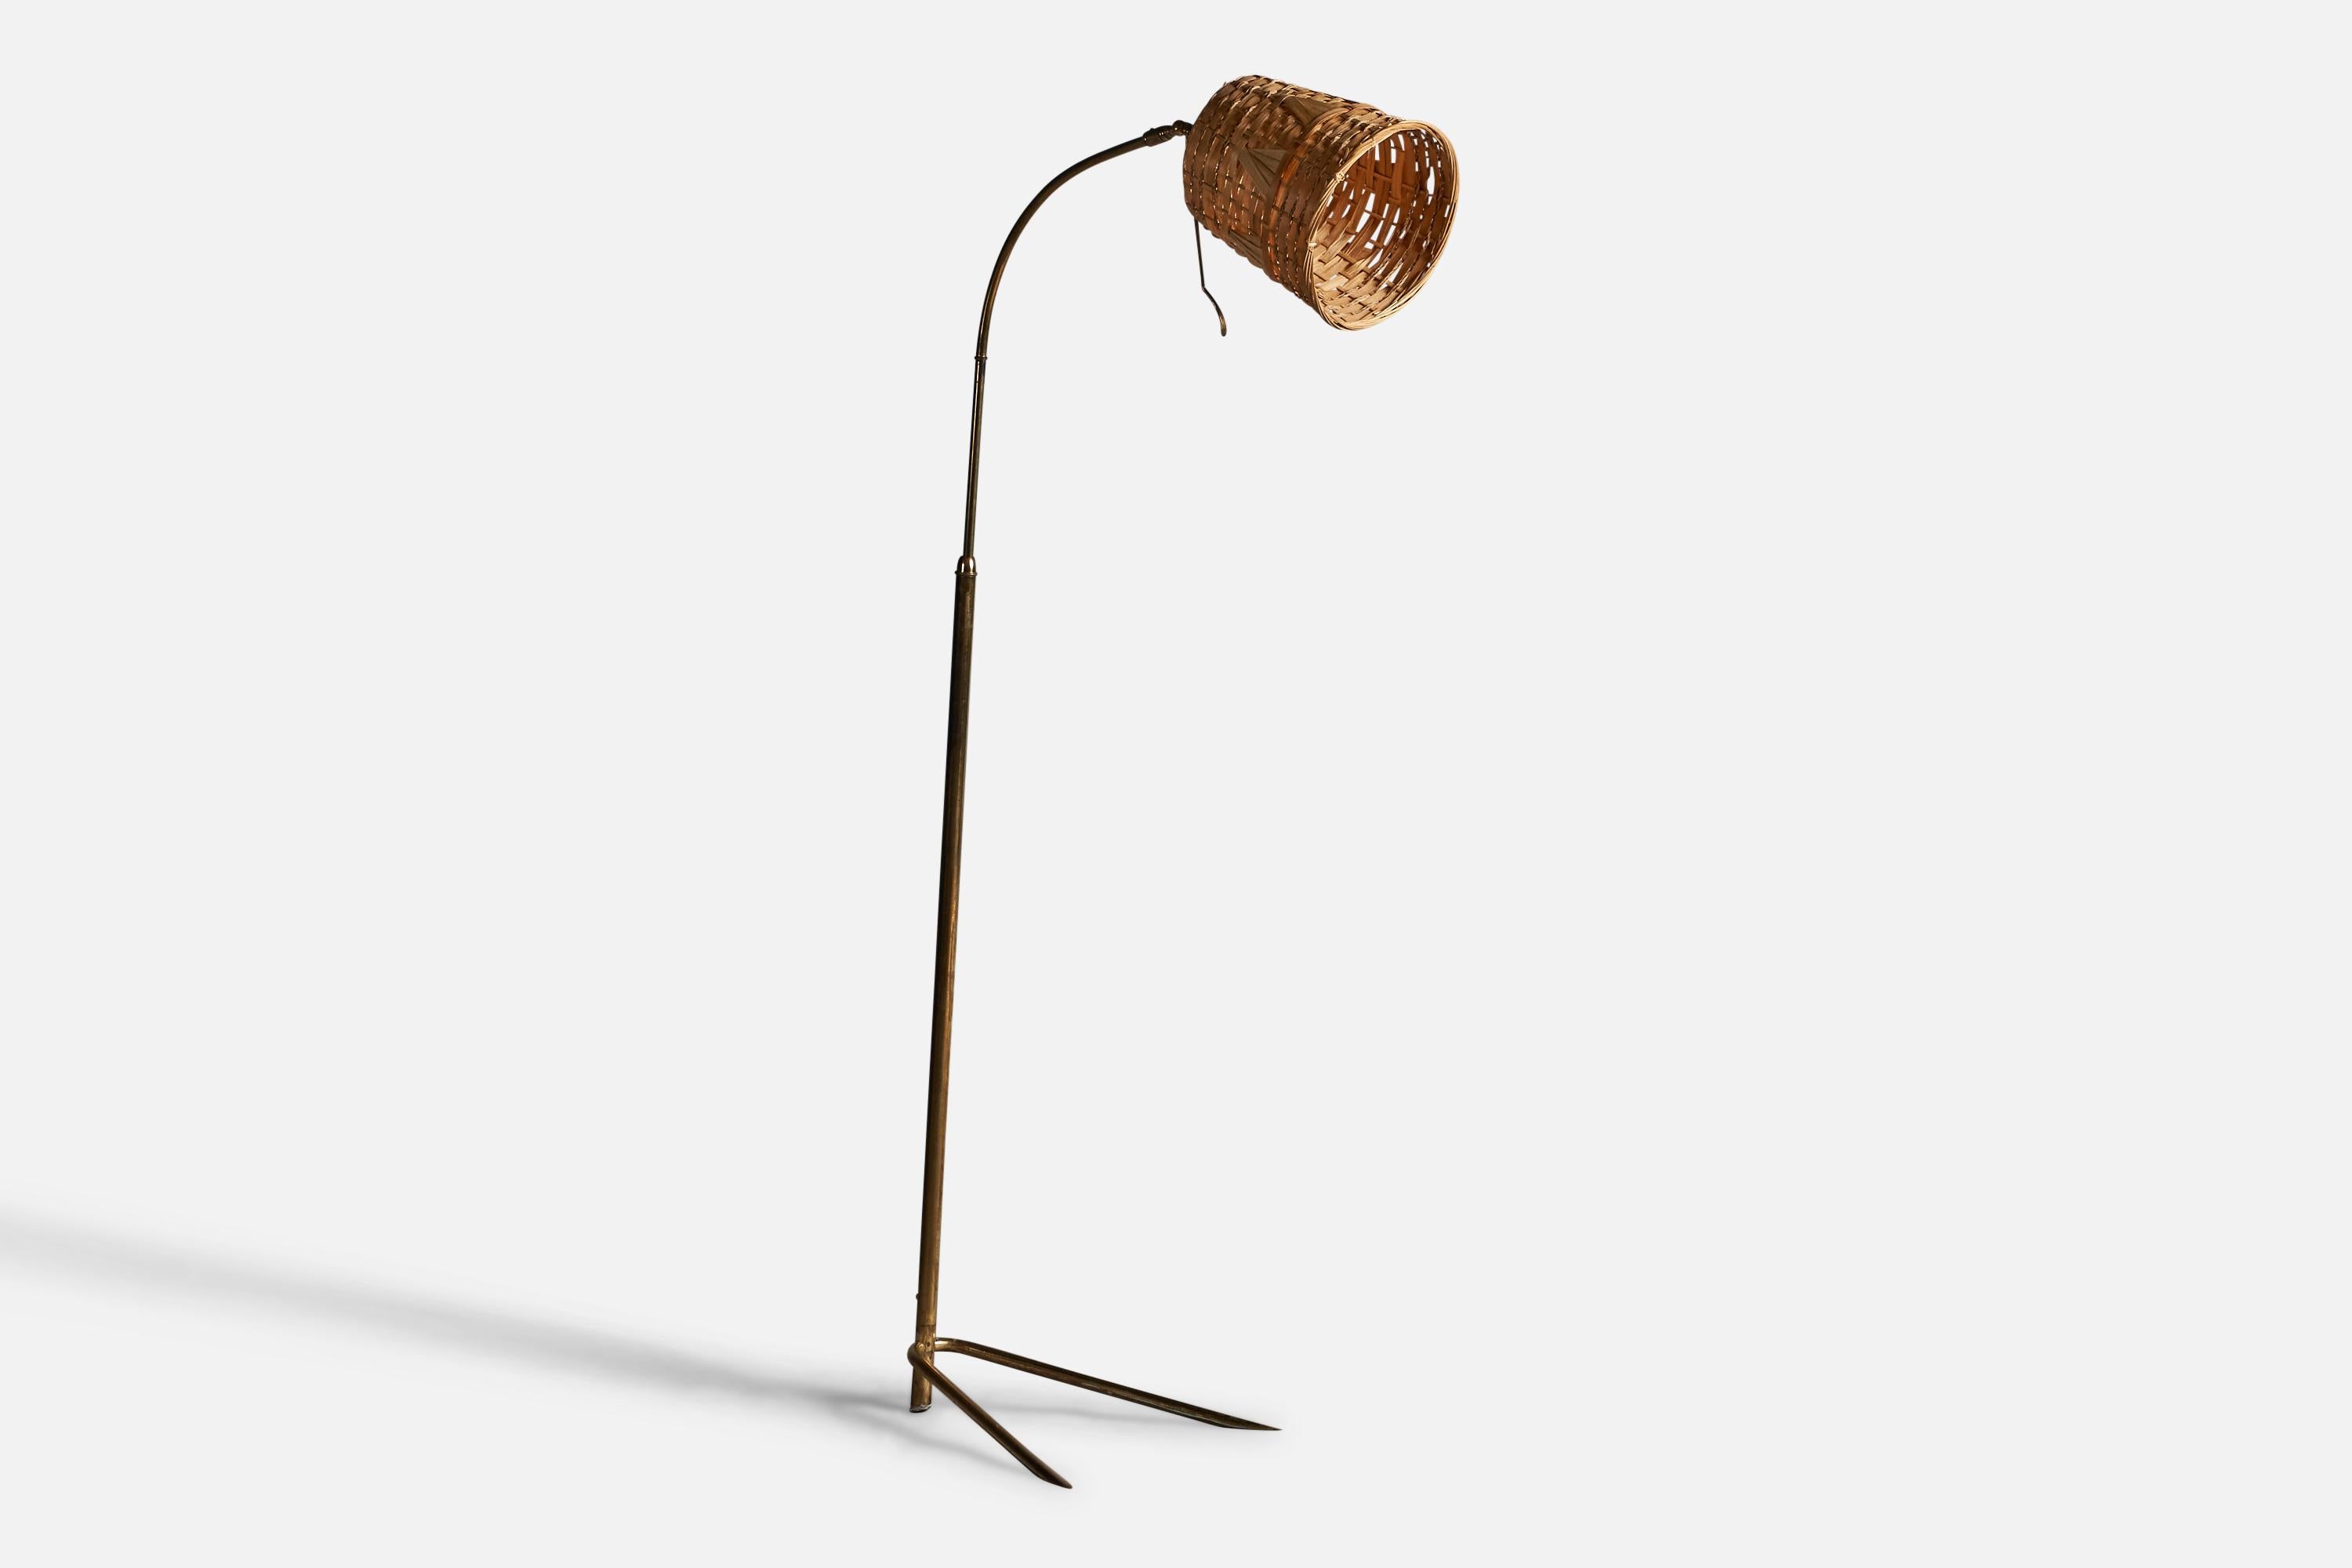 Eine verstellbare Stehlampe aus Messing und Rattan, entworfen und hergestellt in Italien, 1950er Jahre.

Gesamtabmessungen (Zoll): 61,75